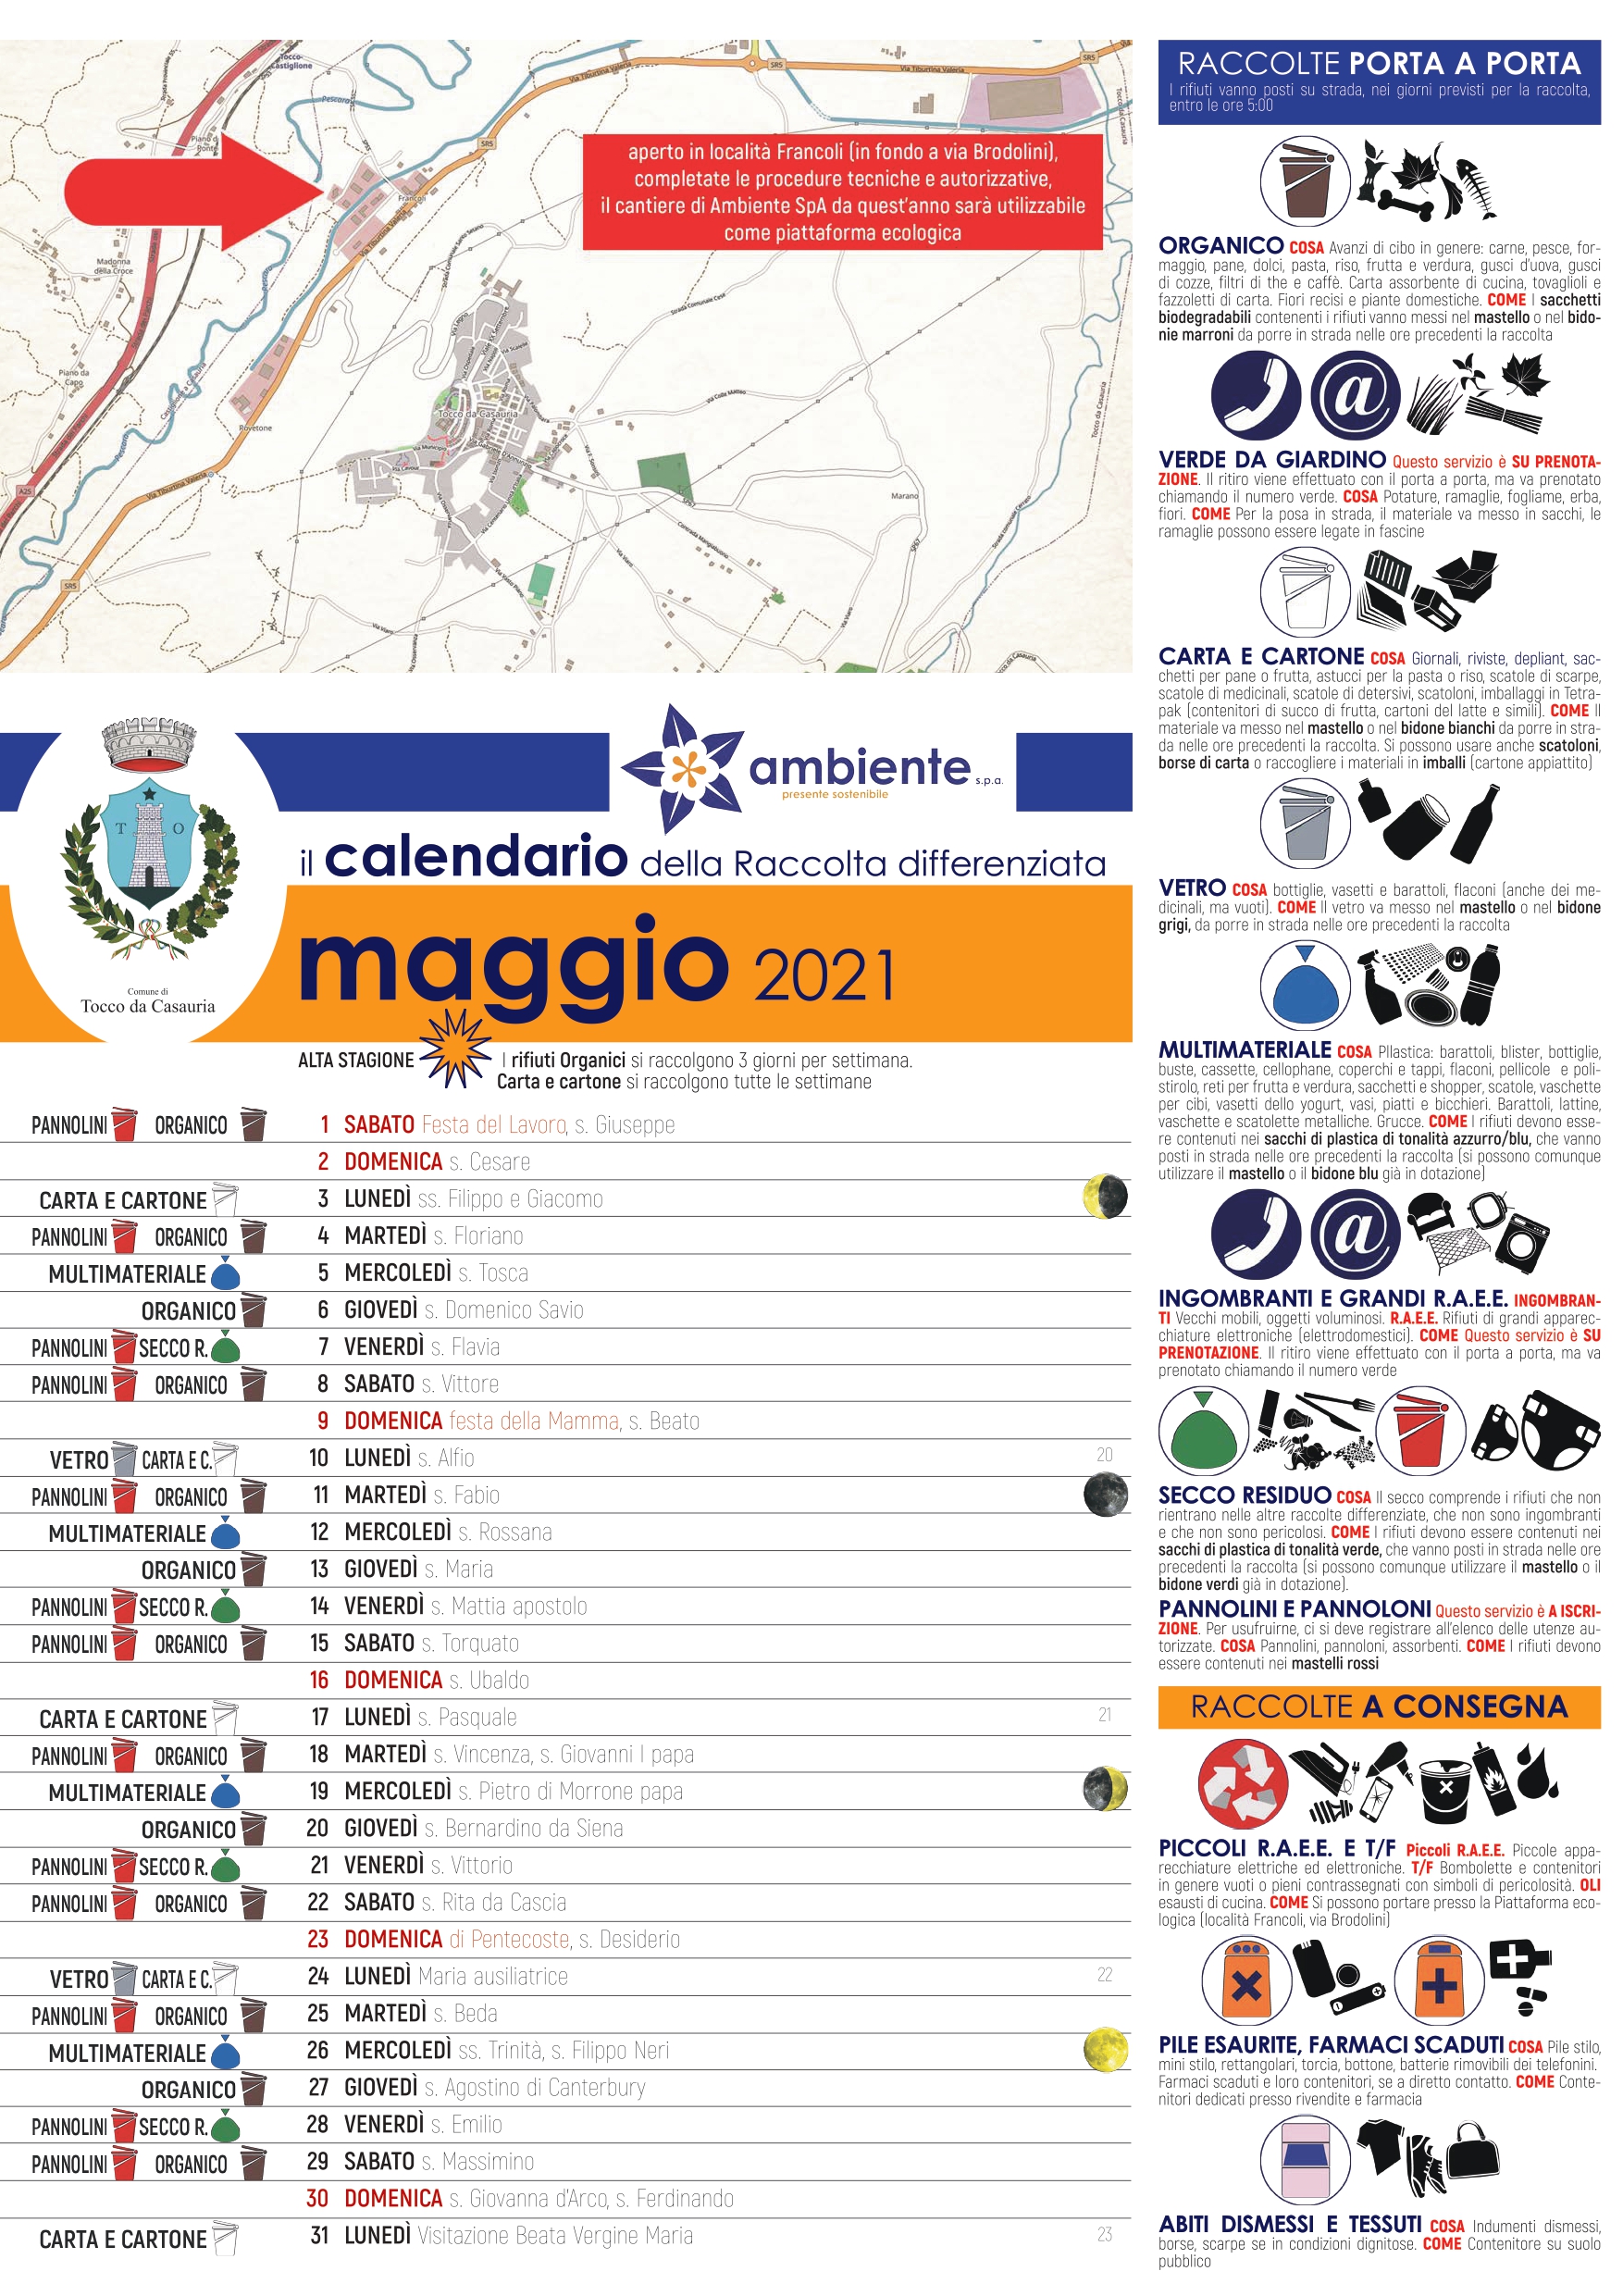 MAGGIO 2021 - CALENDARIO RACCOLTA RIFIUTI